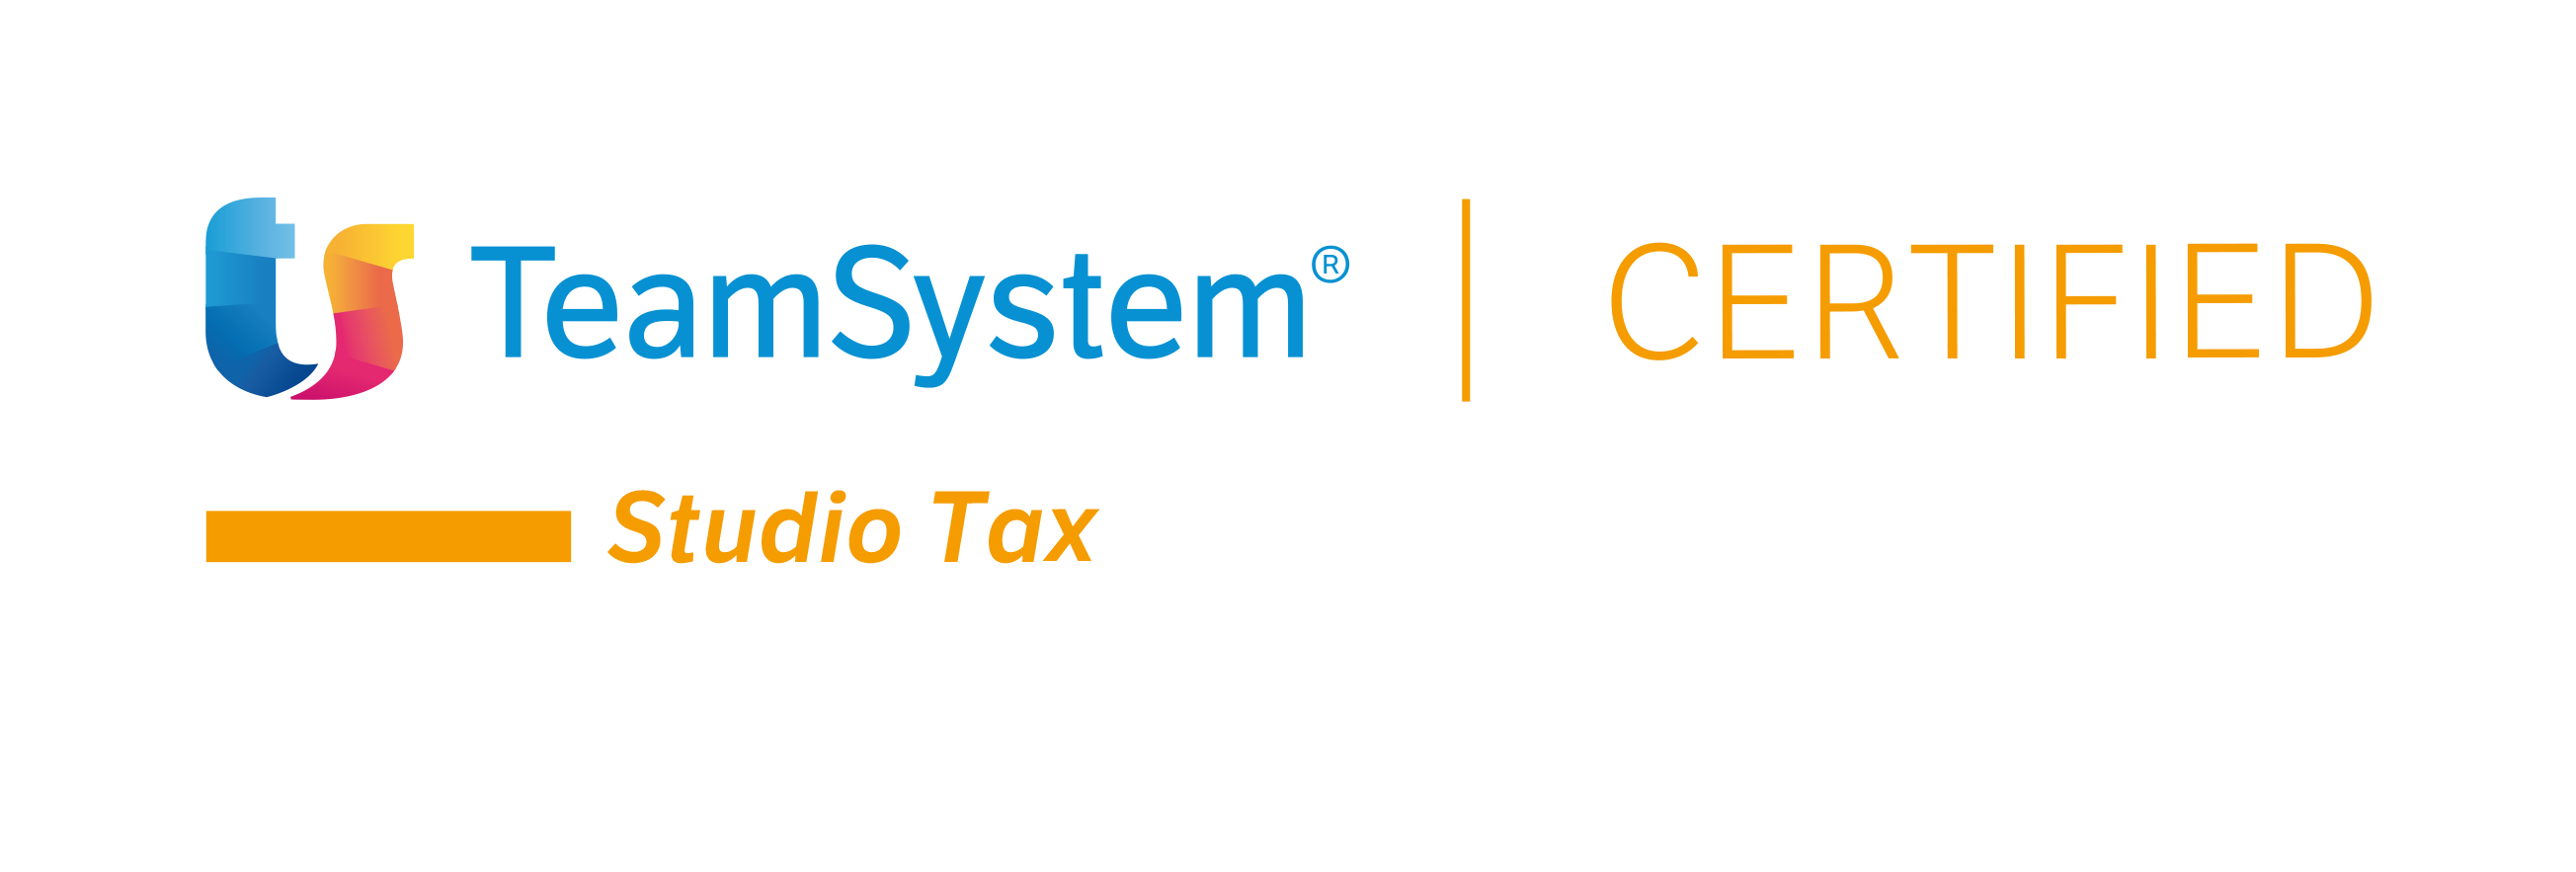 TeamSystem Studio Tax